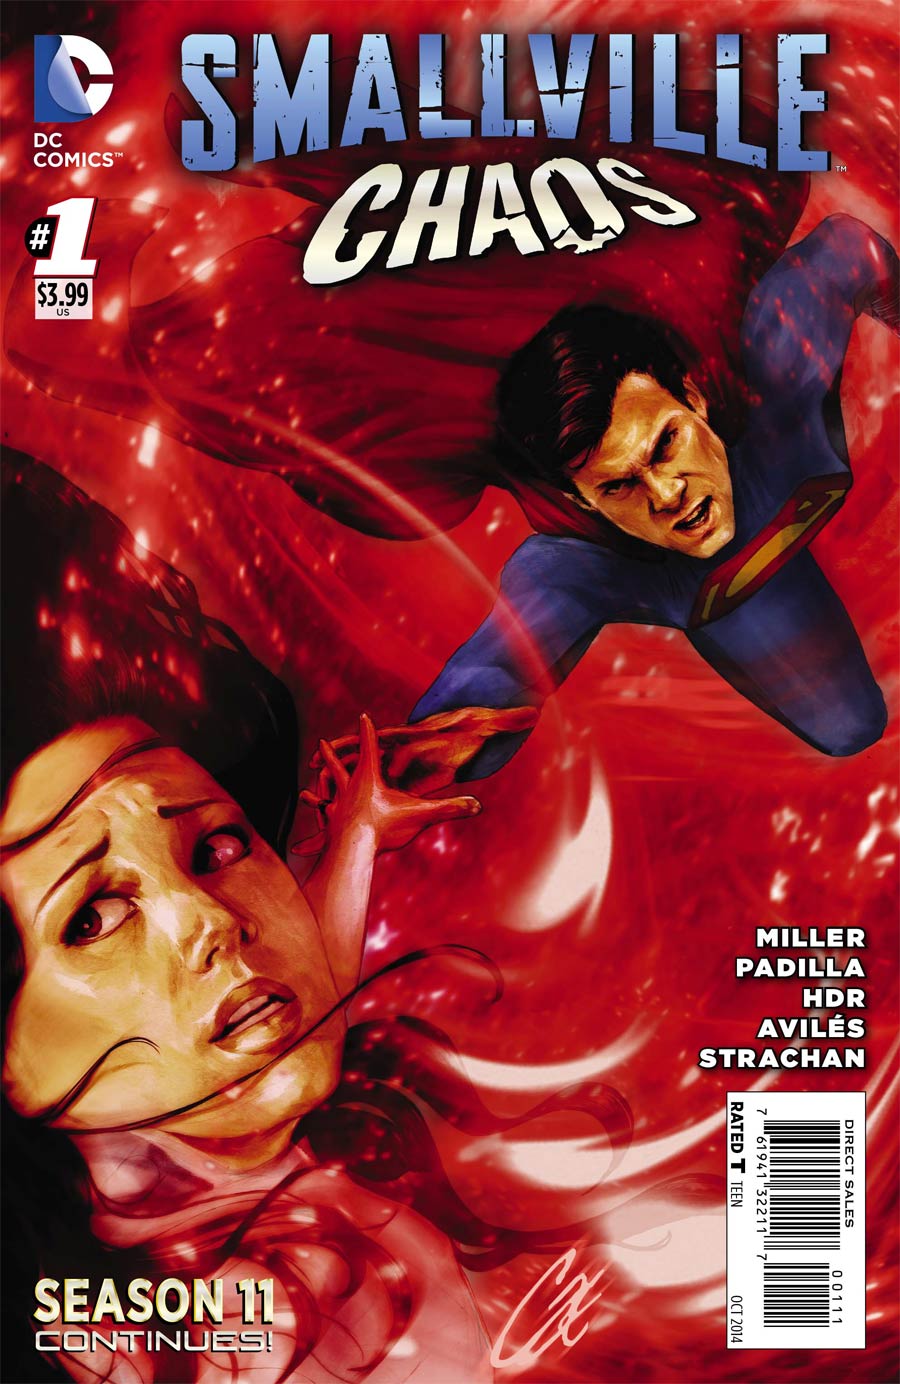 Smallville Season 11 Chaos #1